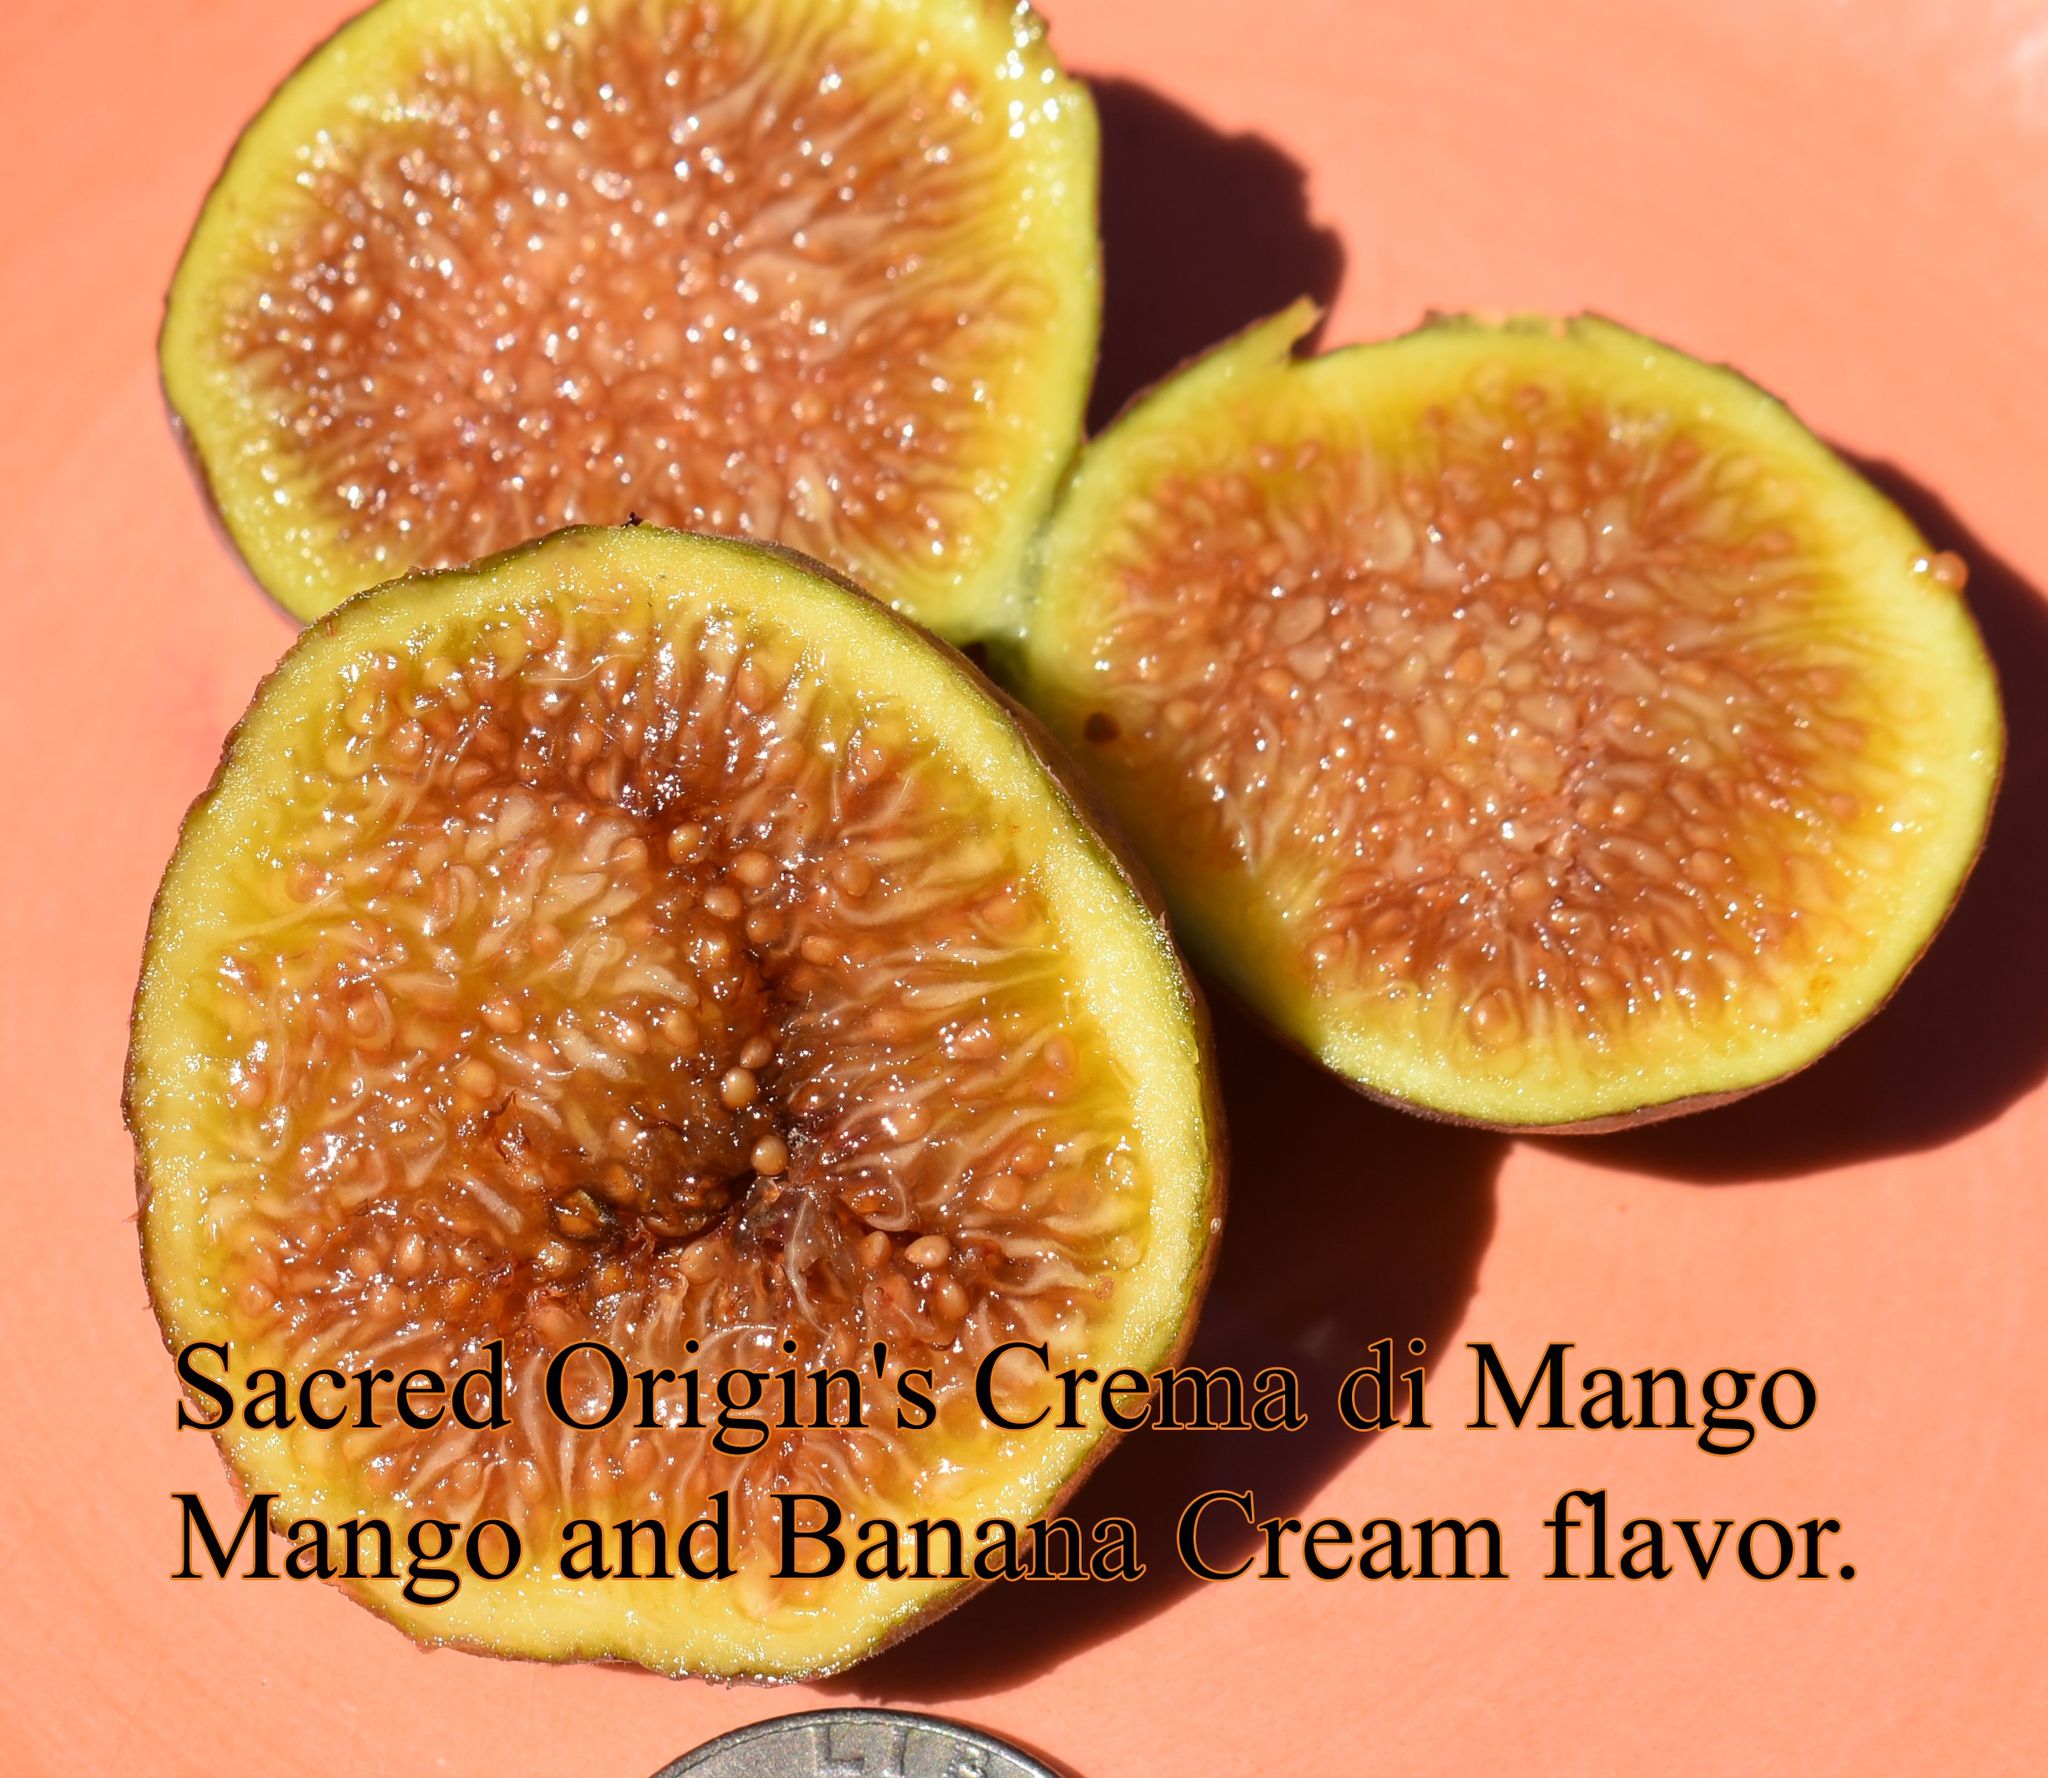 Crema di Mango